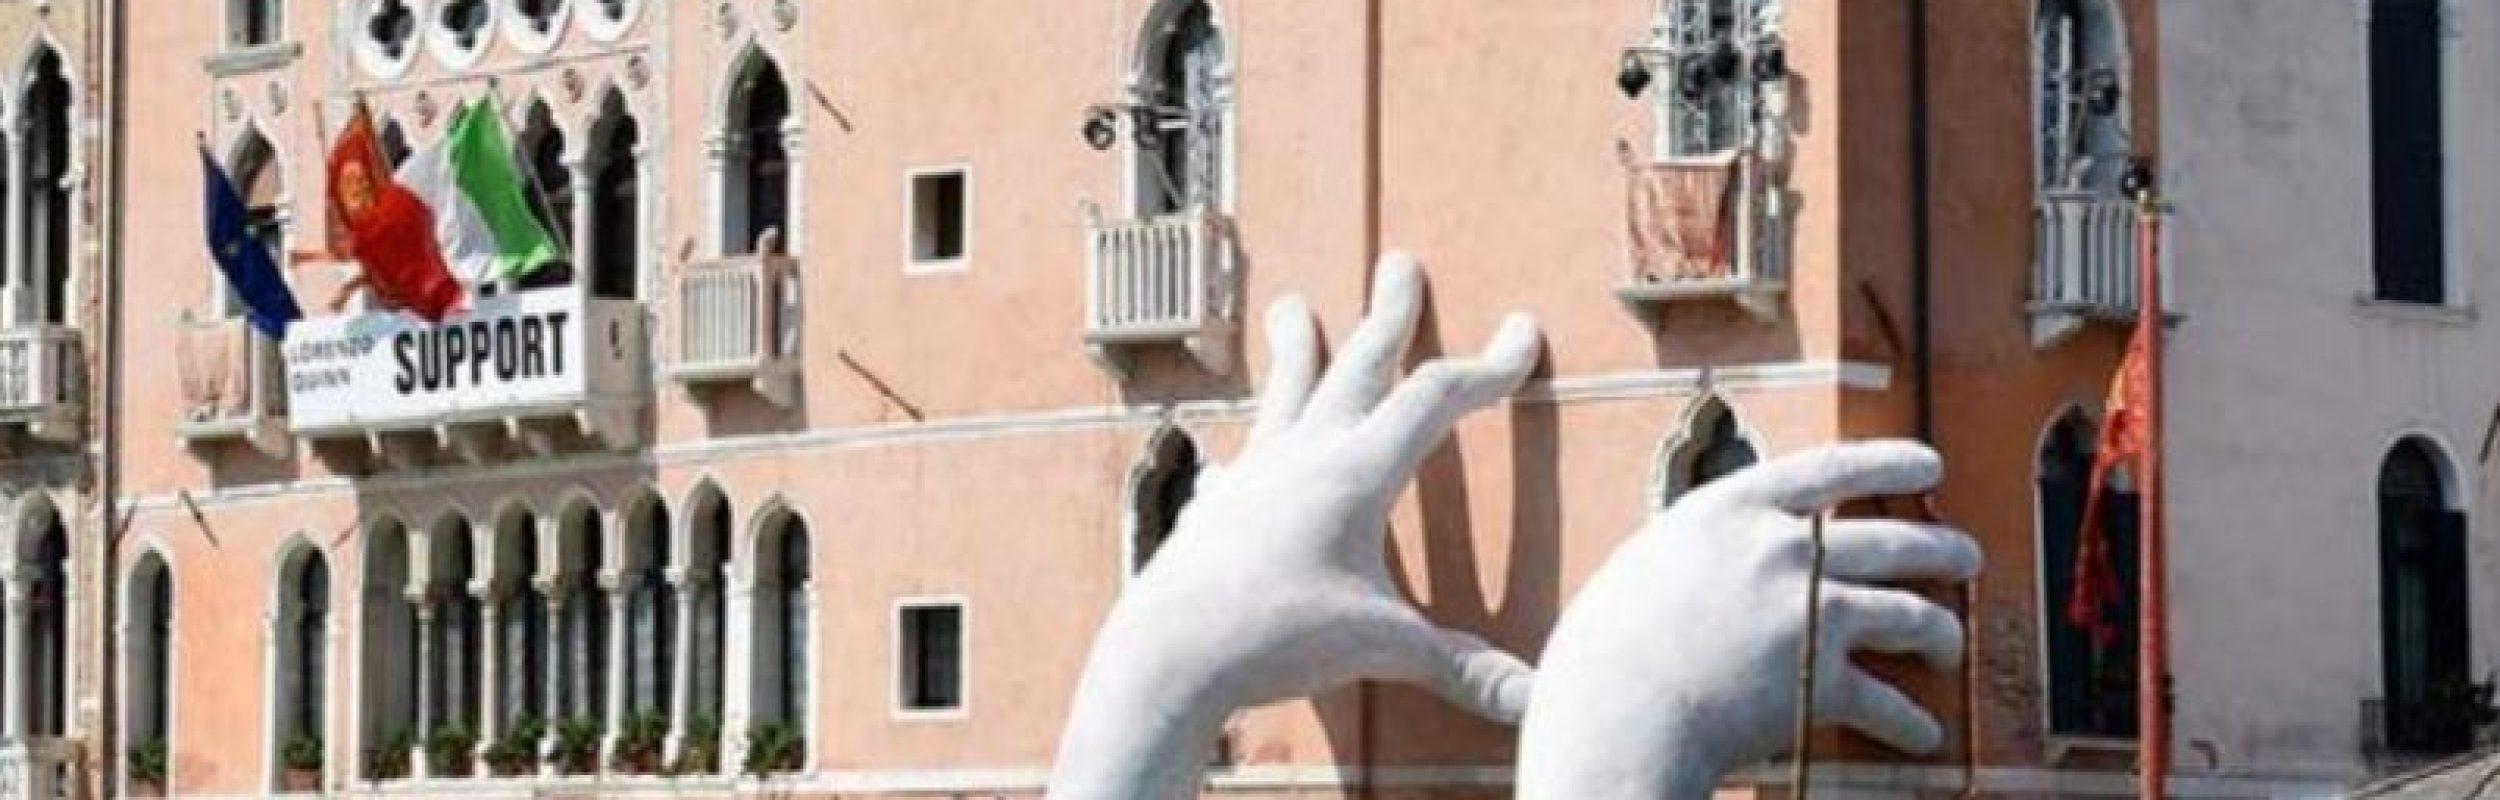 Lorenzo Quinn, le sue mani “Support Venice”